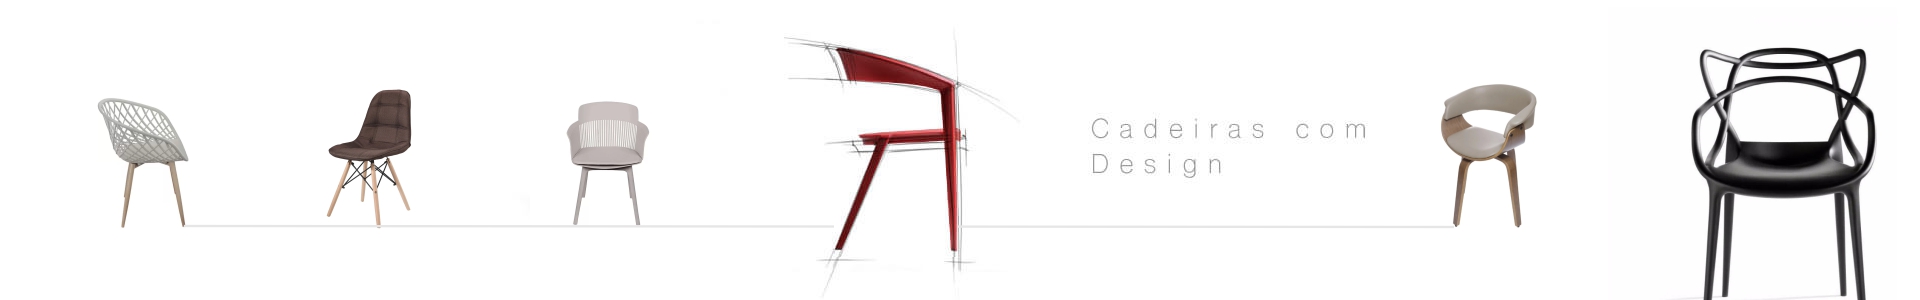 Cadeiras Design - Coleção SPIRIT